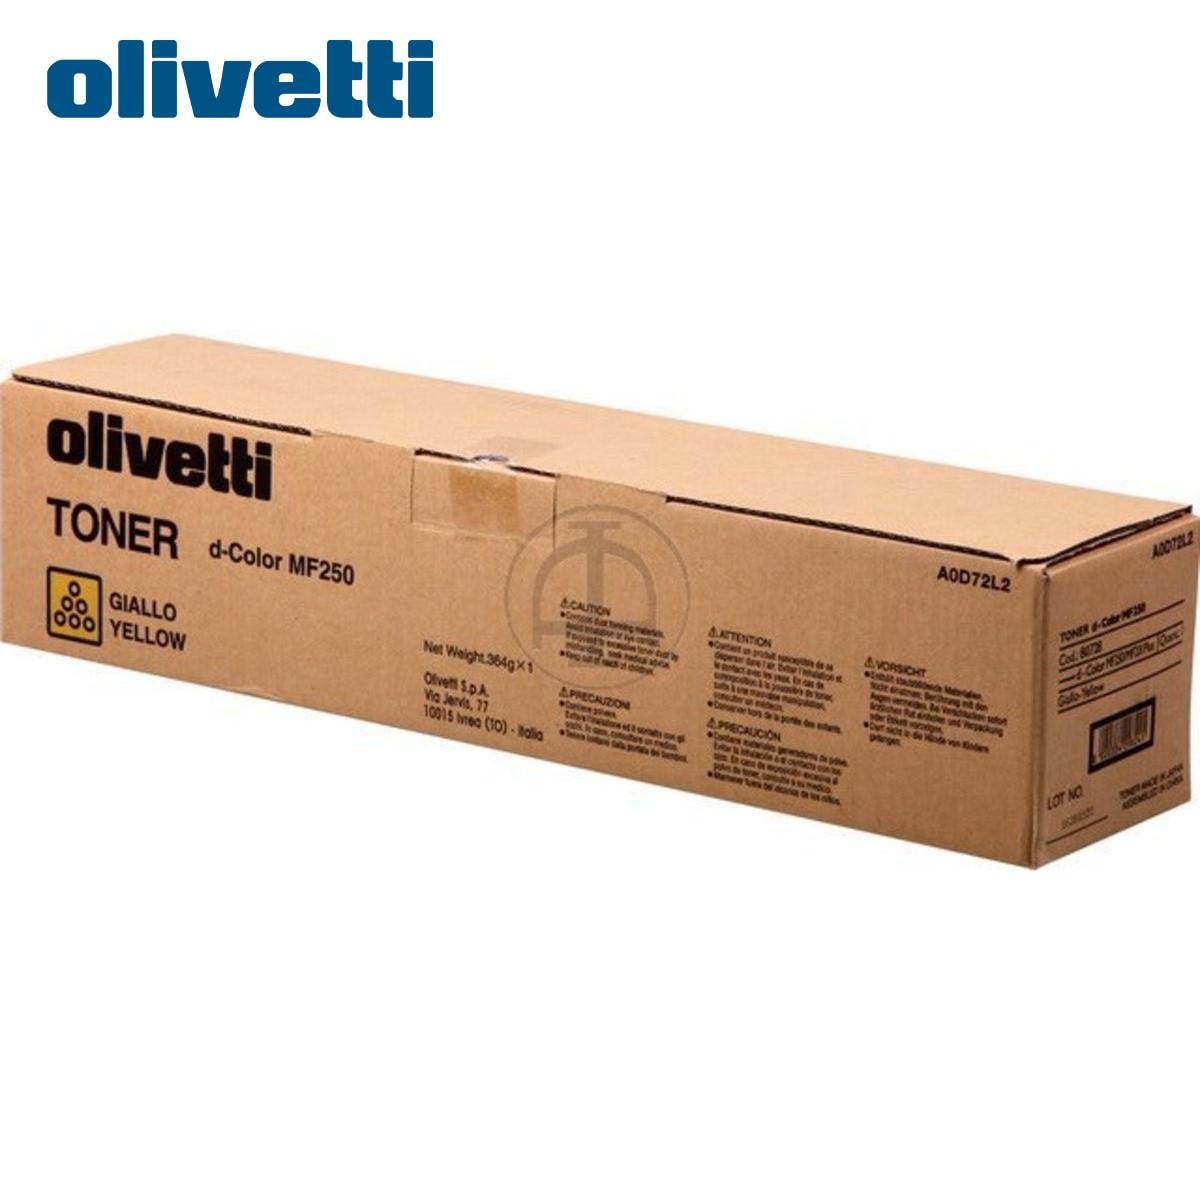 Olivetti Yellow MF201 / MF201plus / MF250 / MF350 (Original)